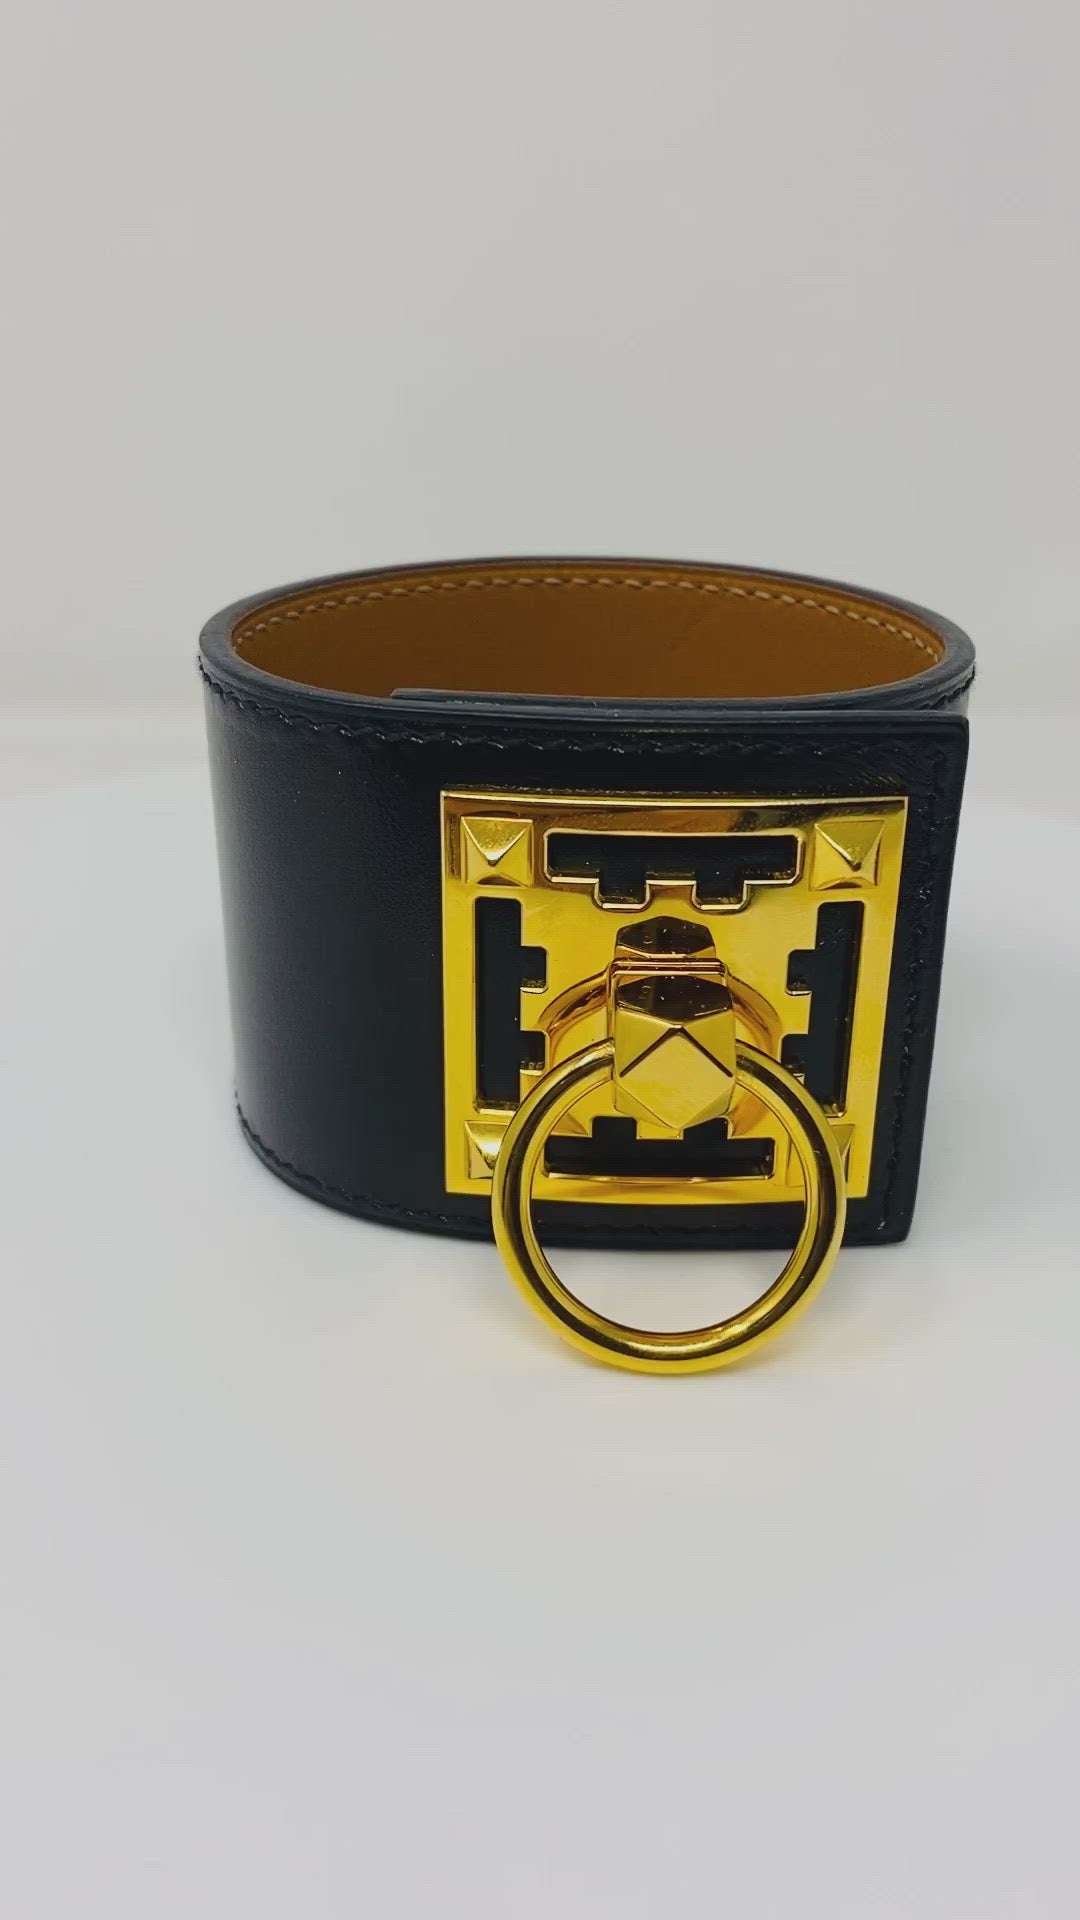 Hermes creneau bracelet; black leather and gold